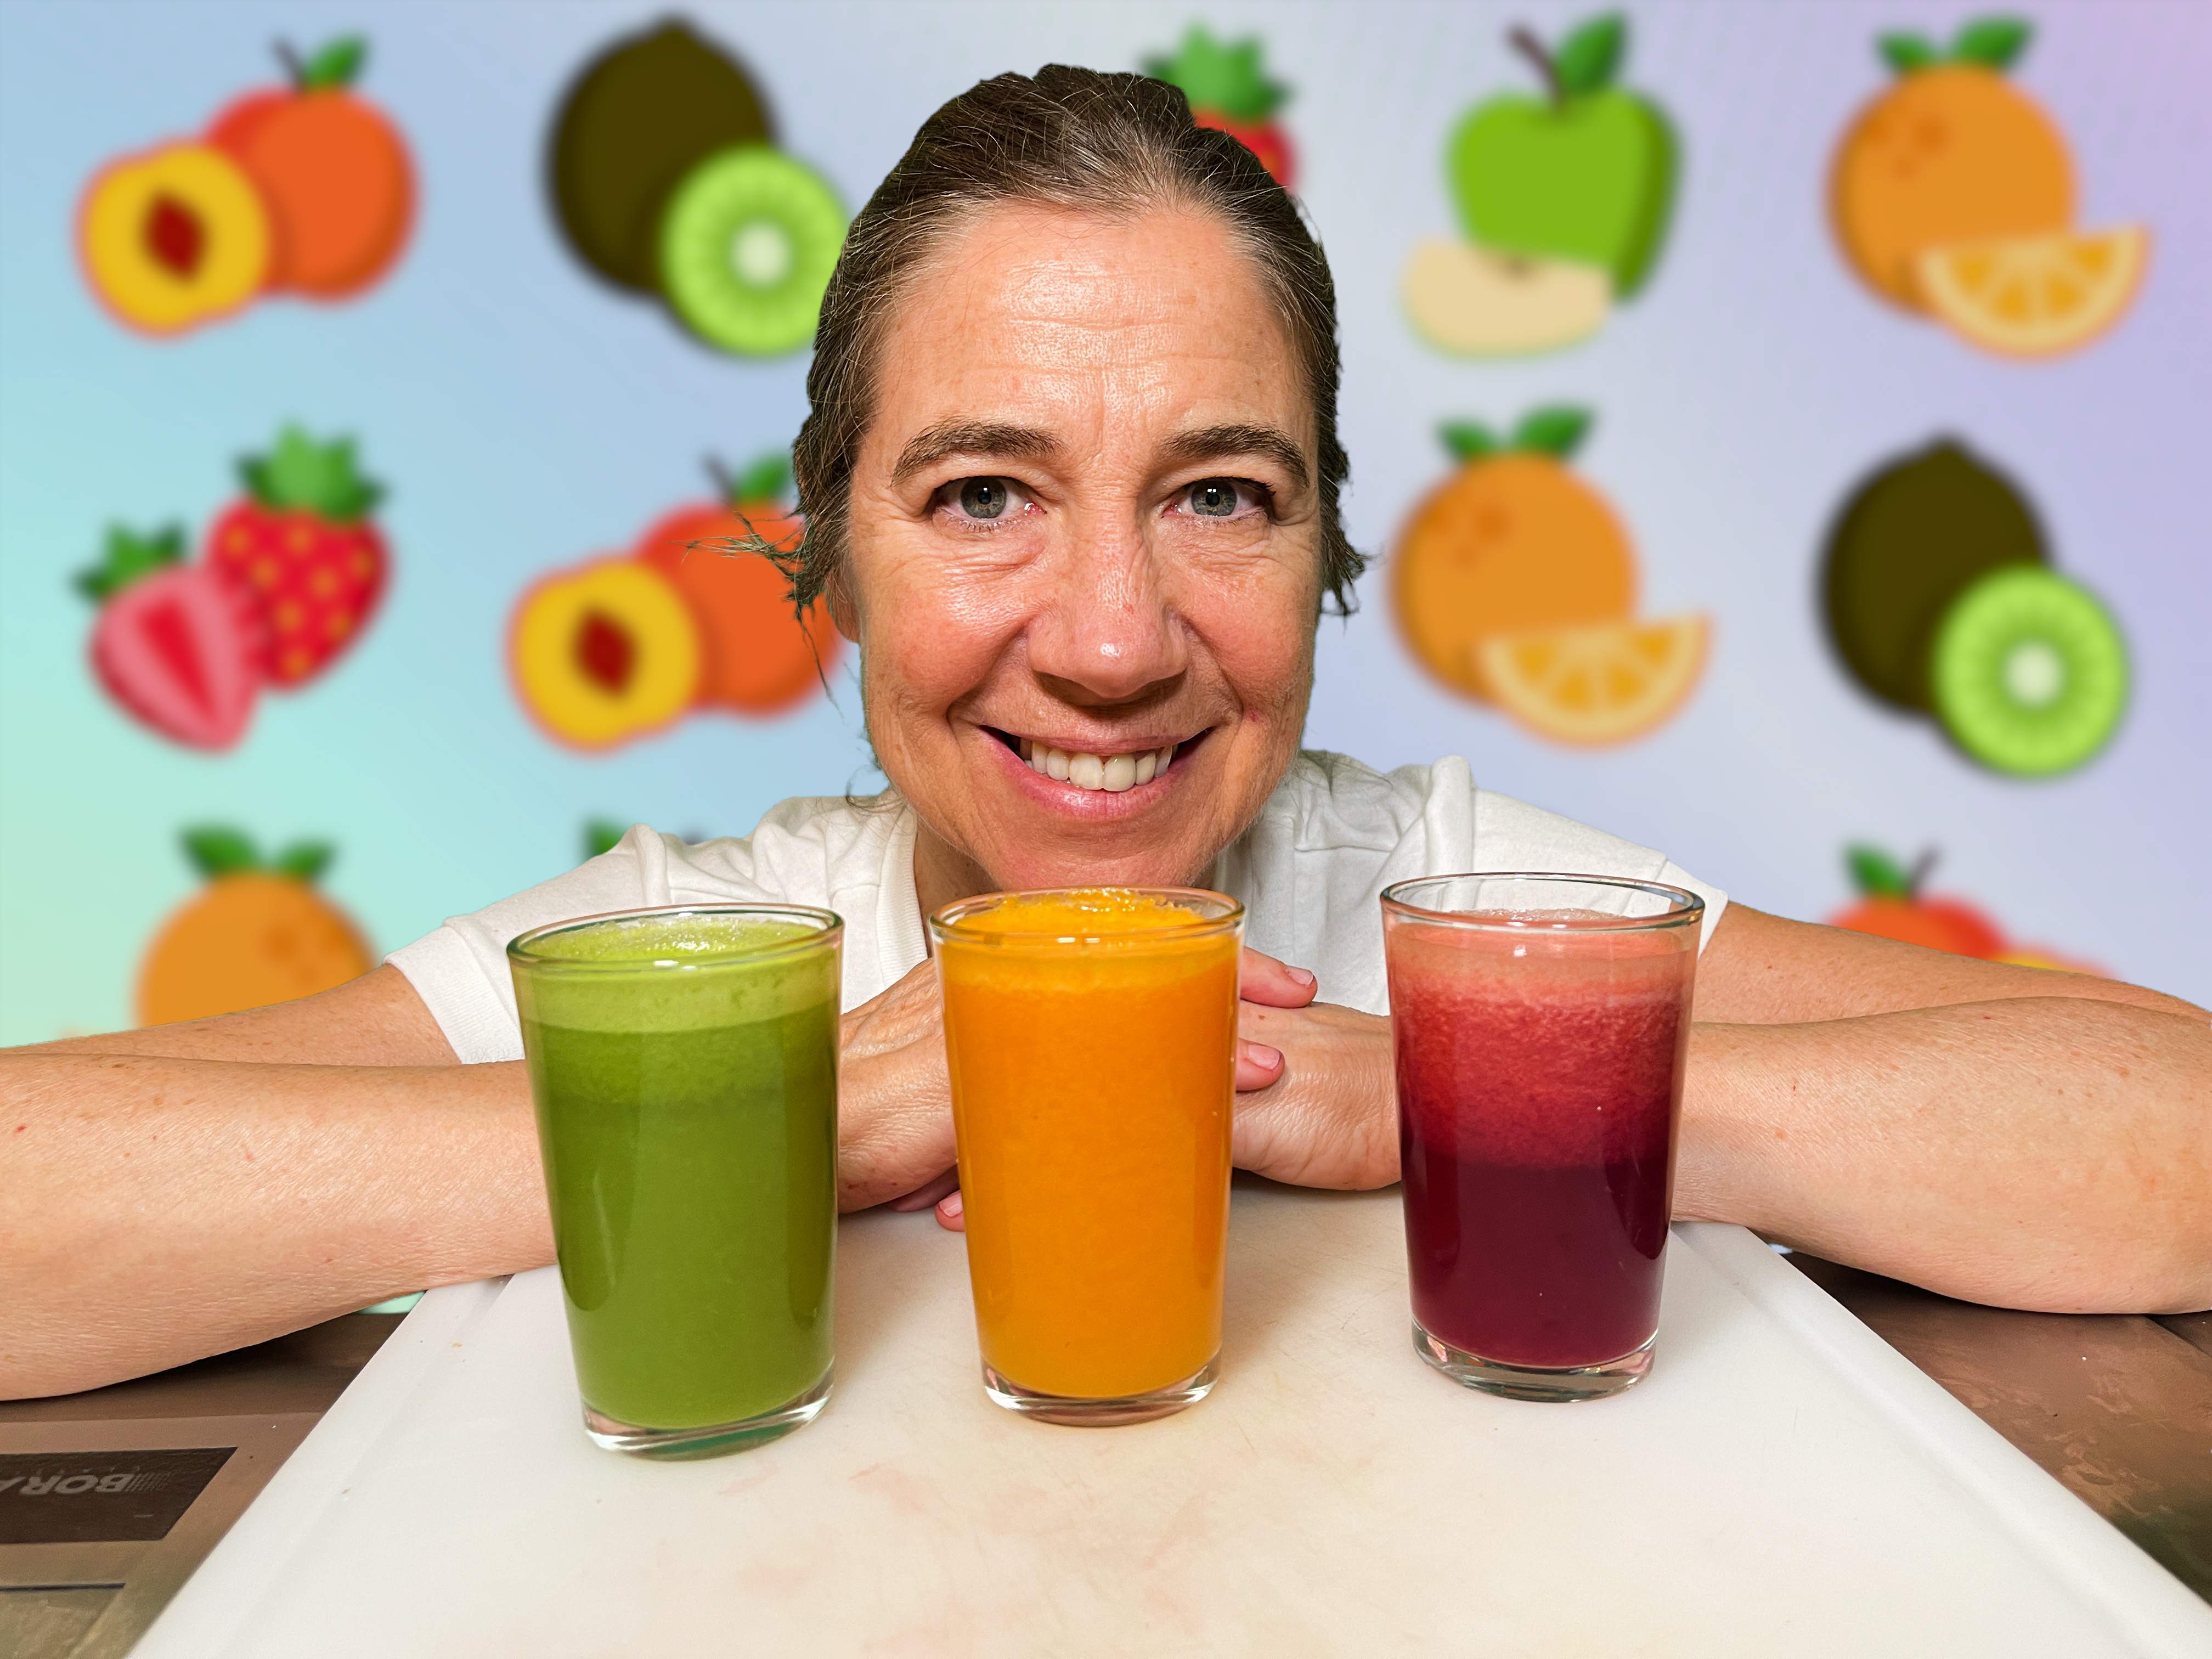 Hacer zumos naturales y saludables en casa: el consejo delicioso de Ada Parellada